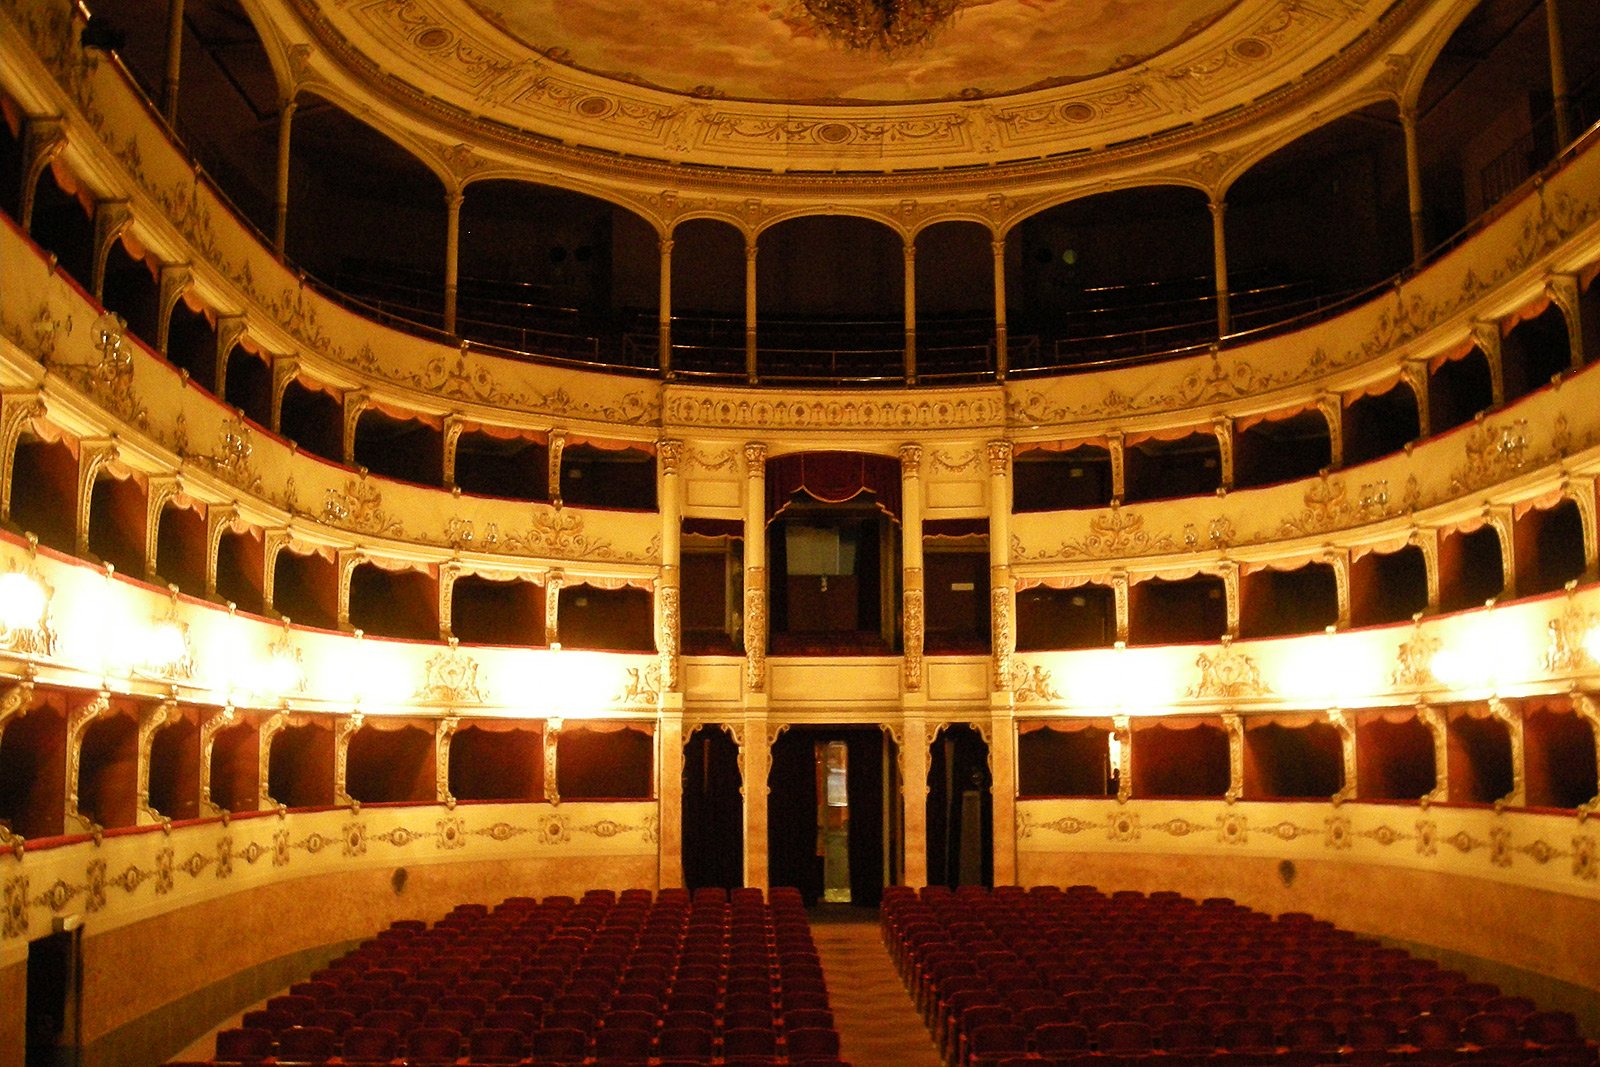 Pergola Theatre, Florence